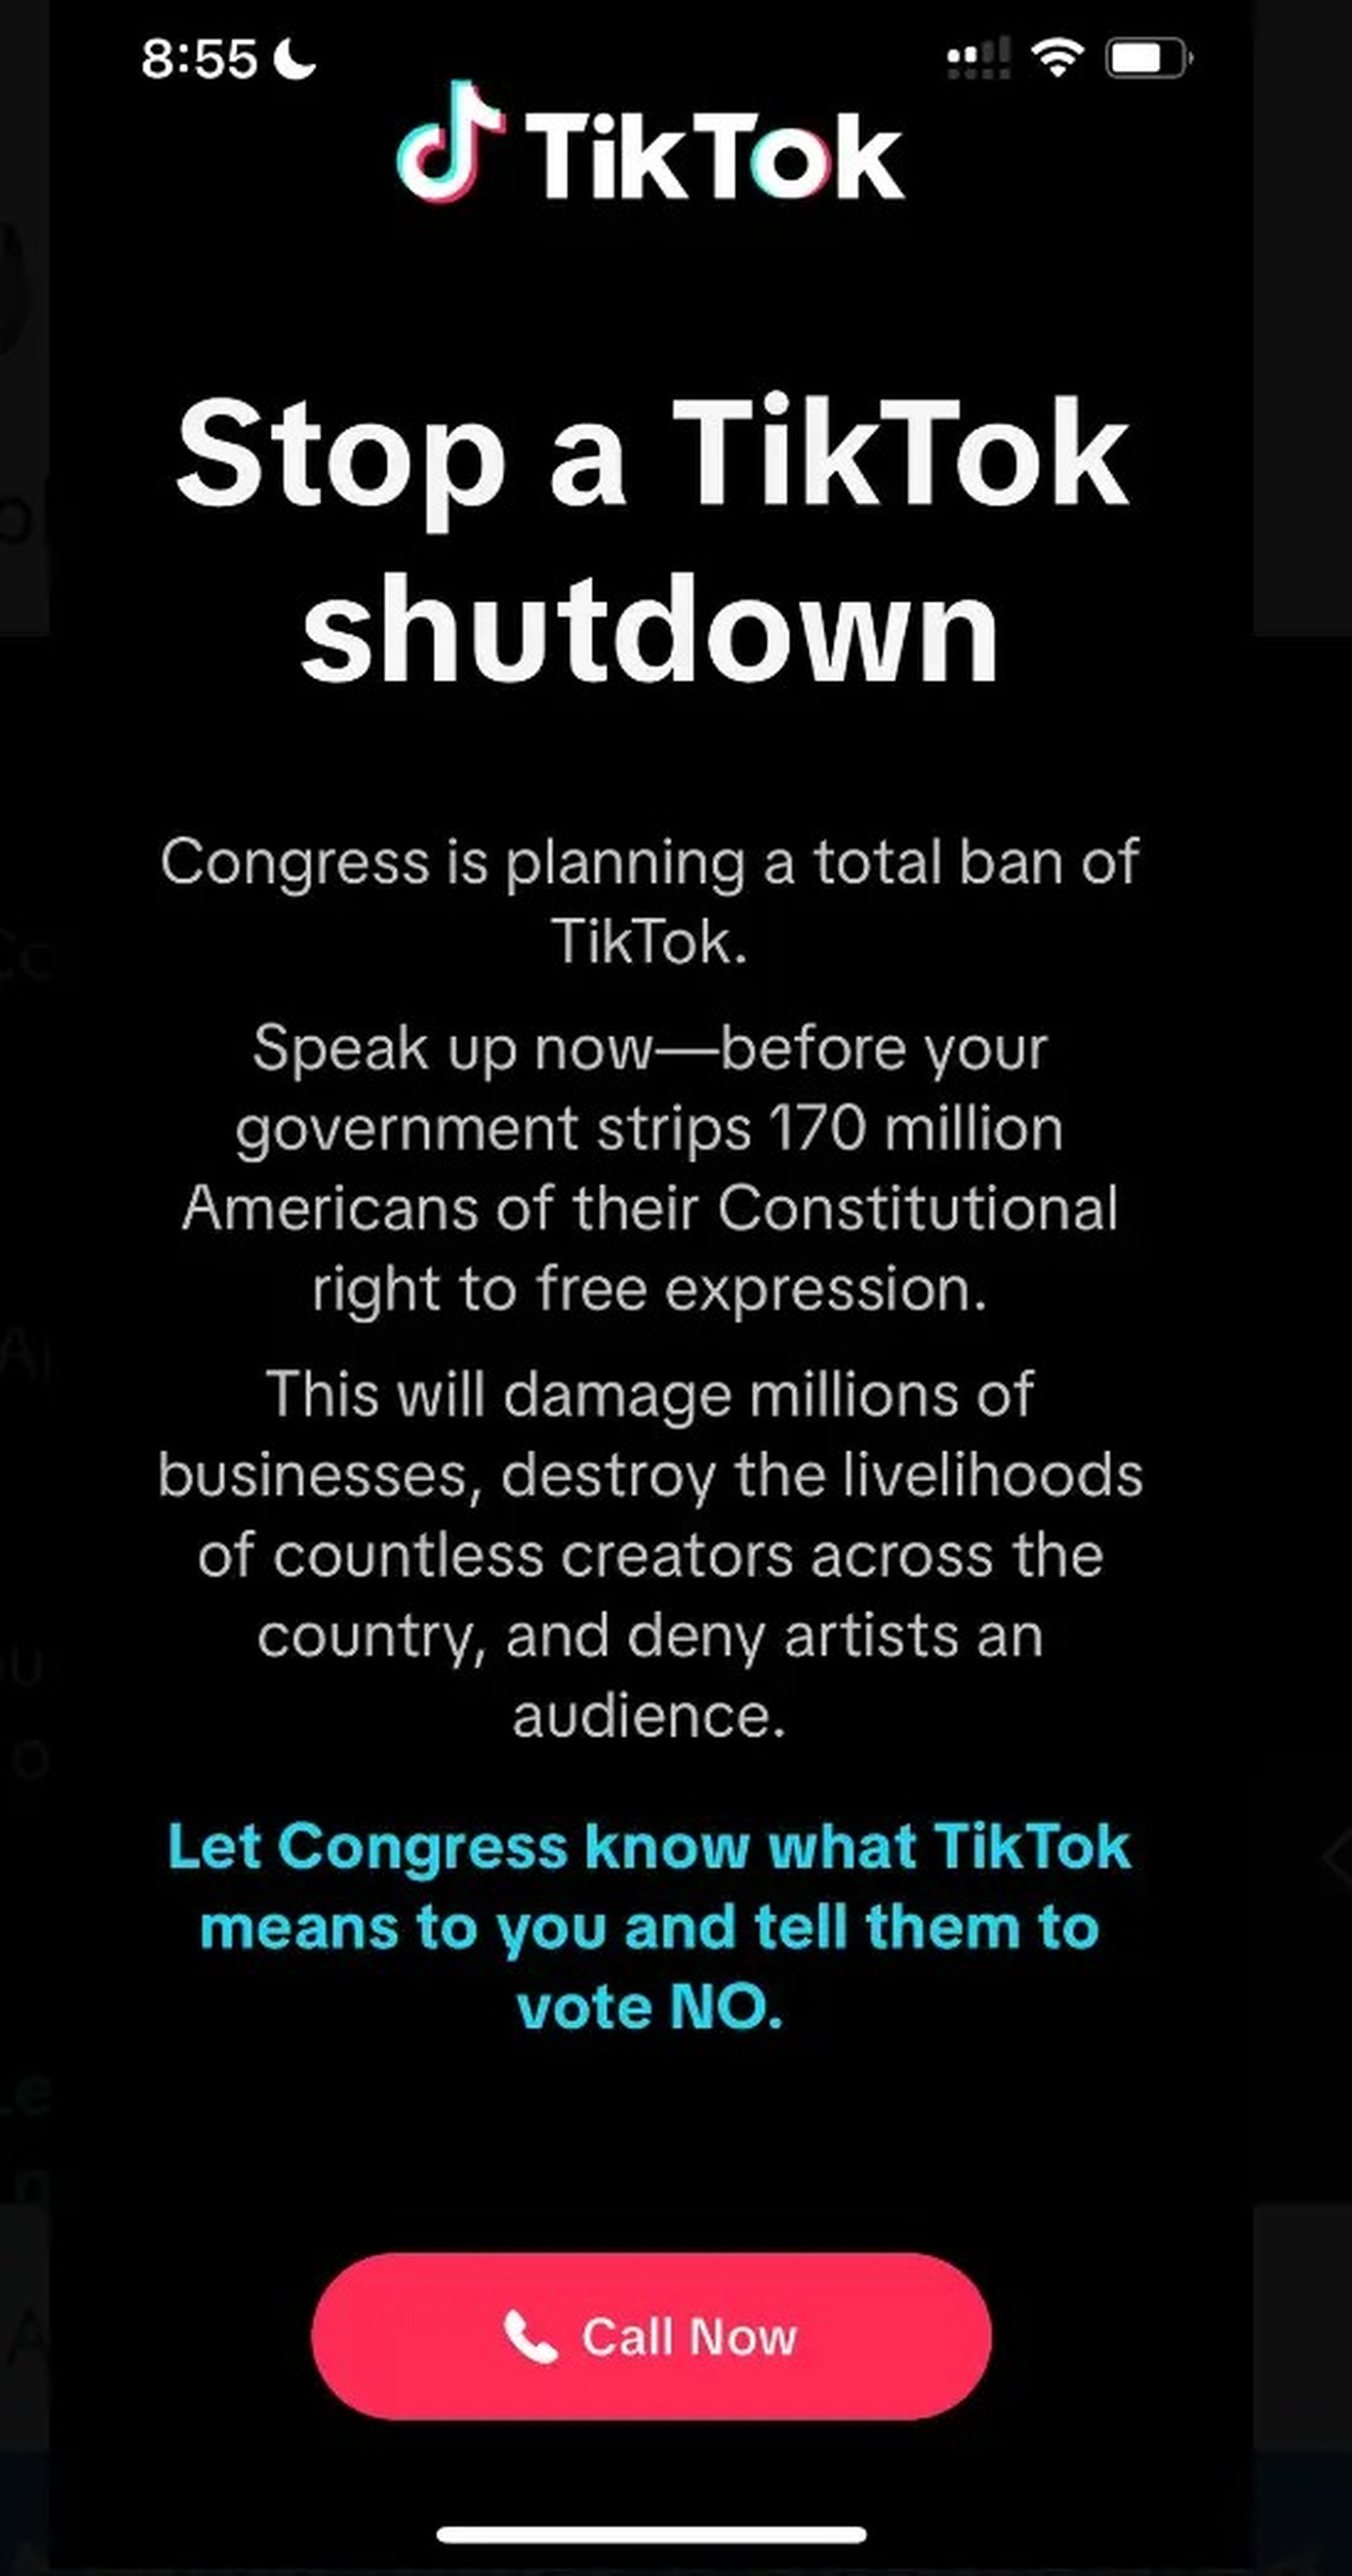 Una publicación en Twitter que muestra un mensaje de TikTok en el que se insta a los usuarios a llamar al Congreso.